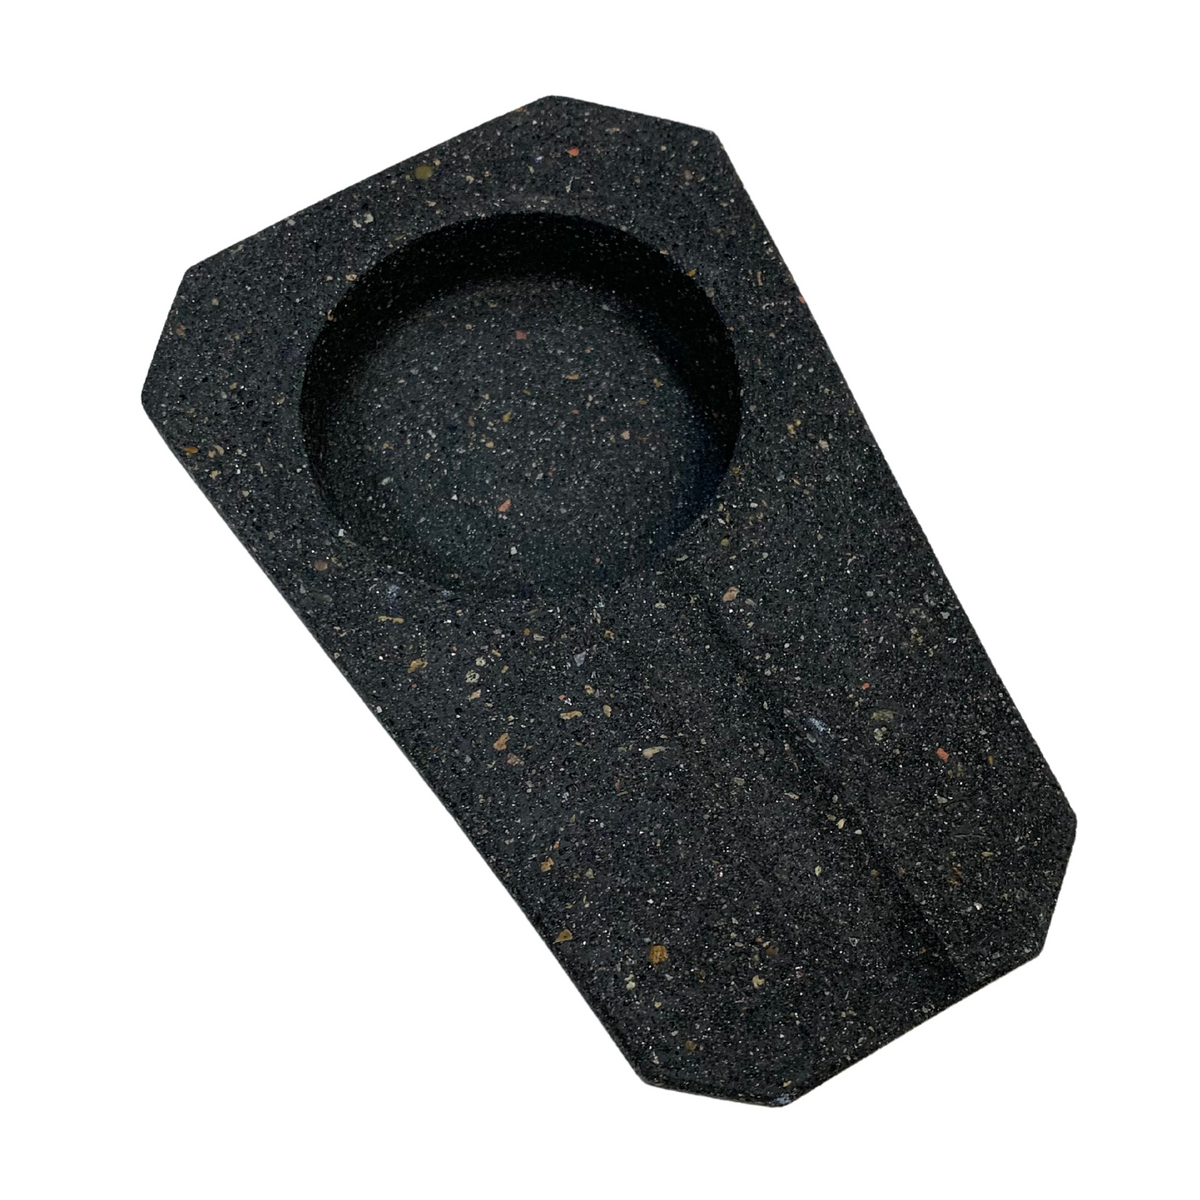 Concrete Ashtray – Terrazzo Black